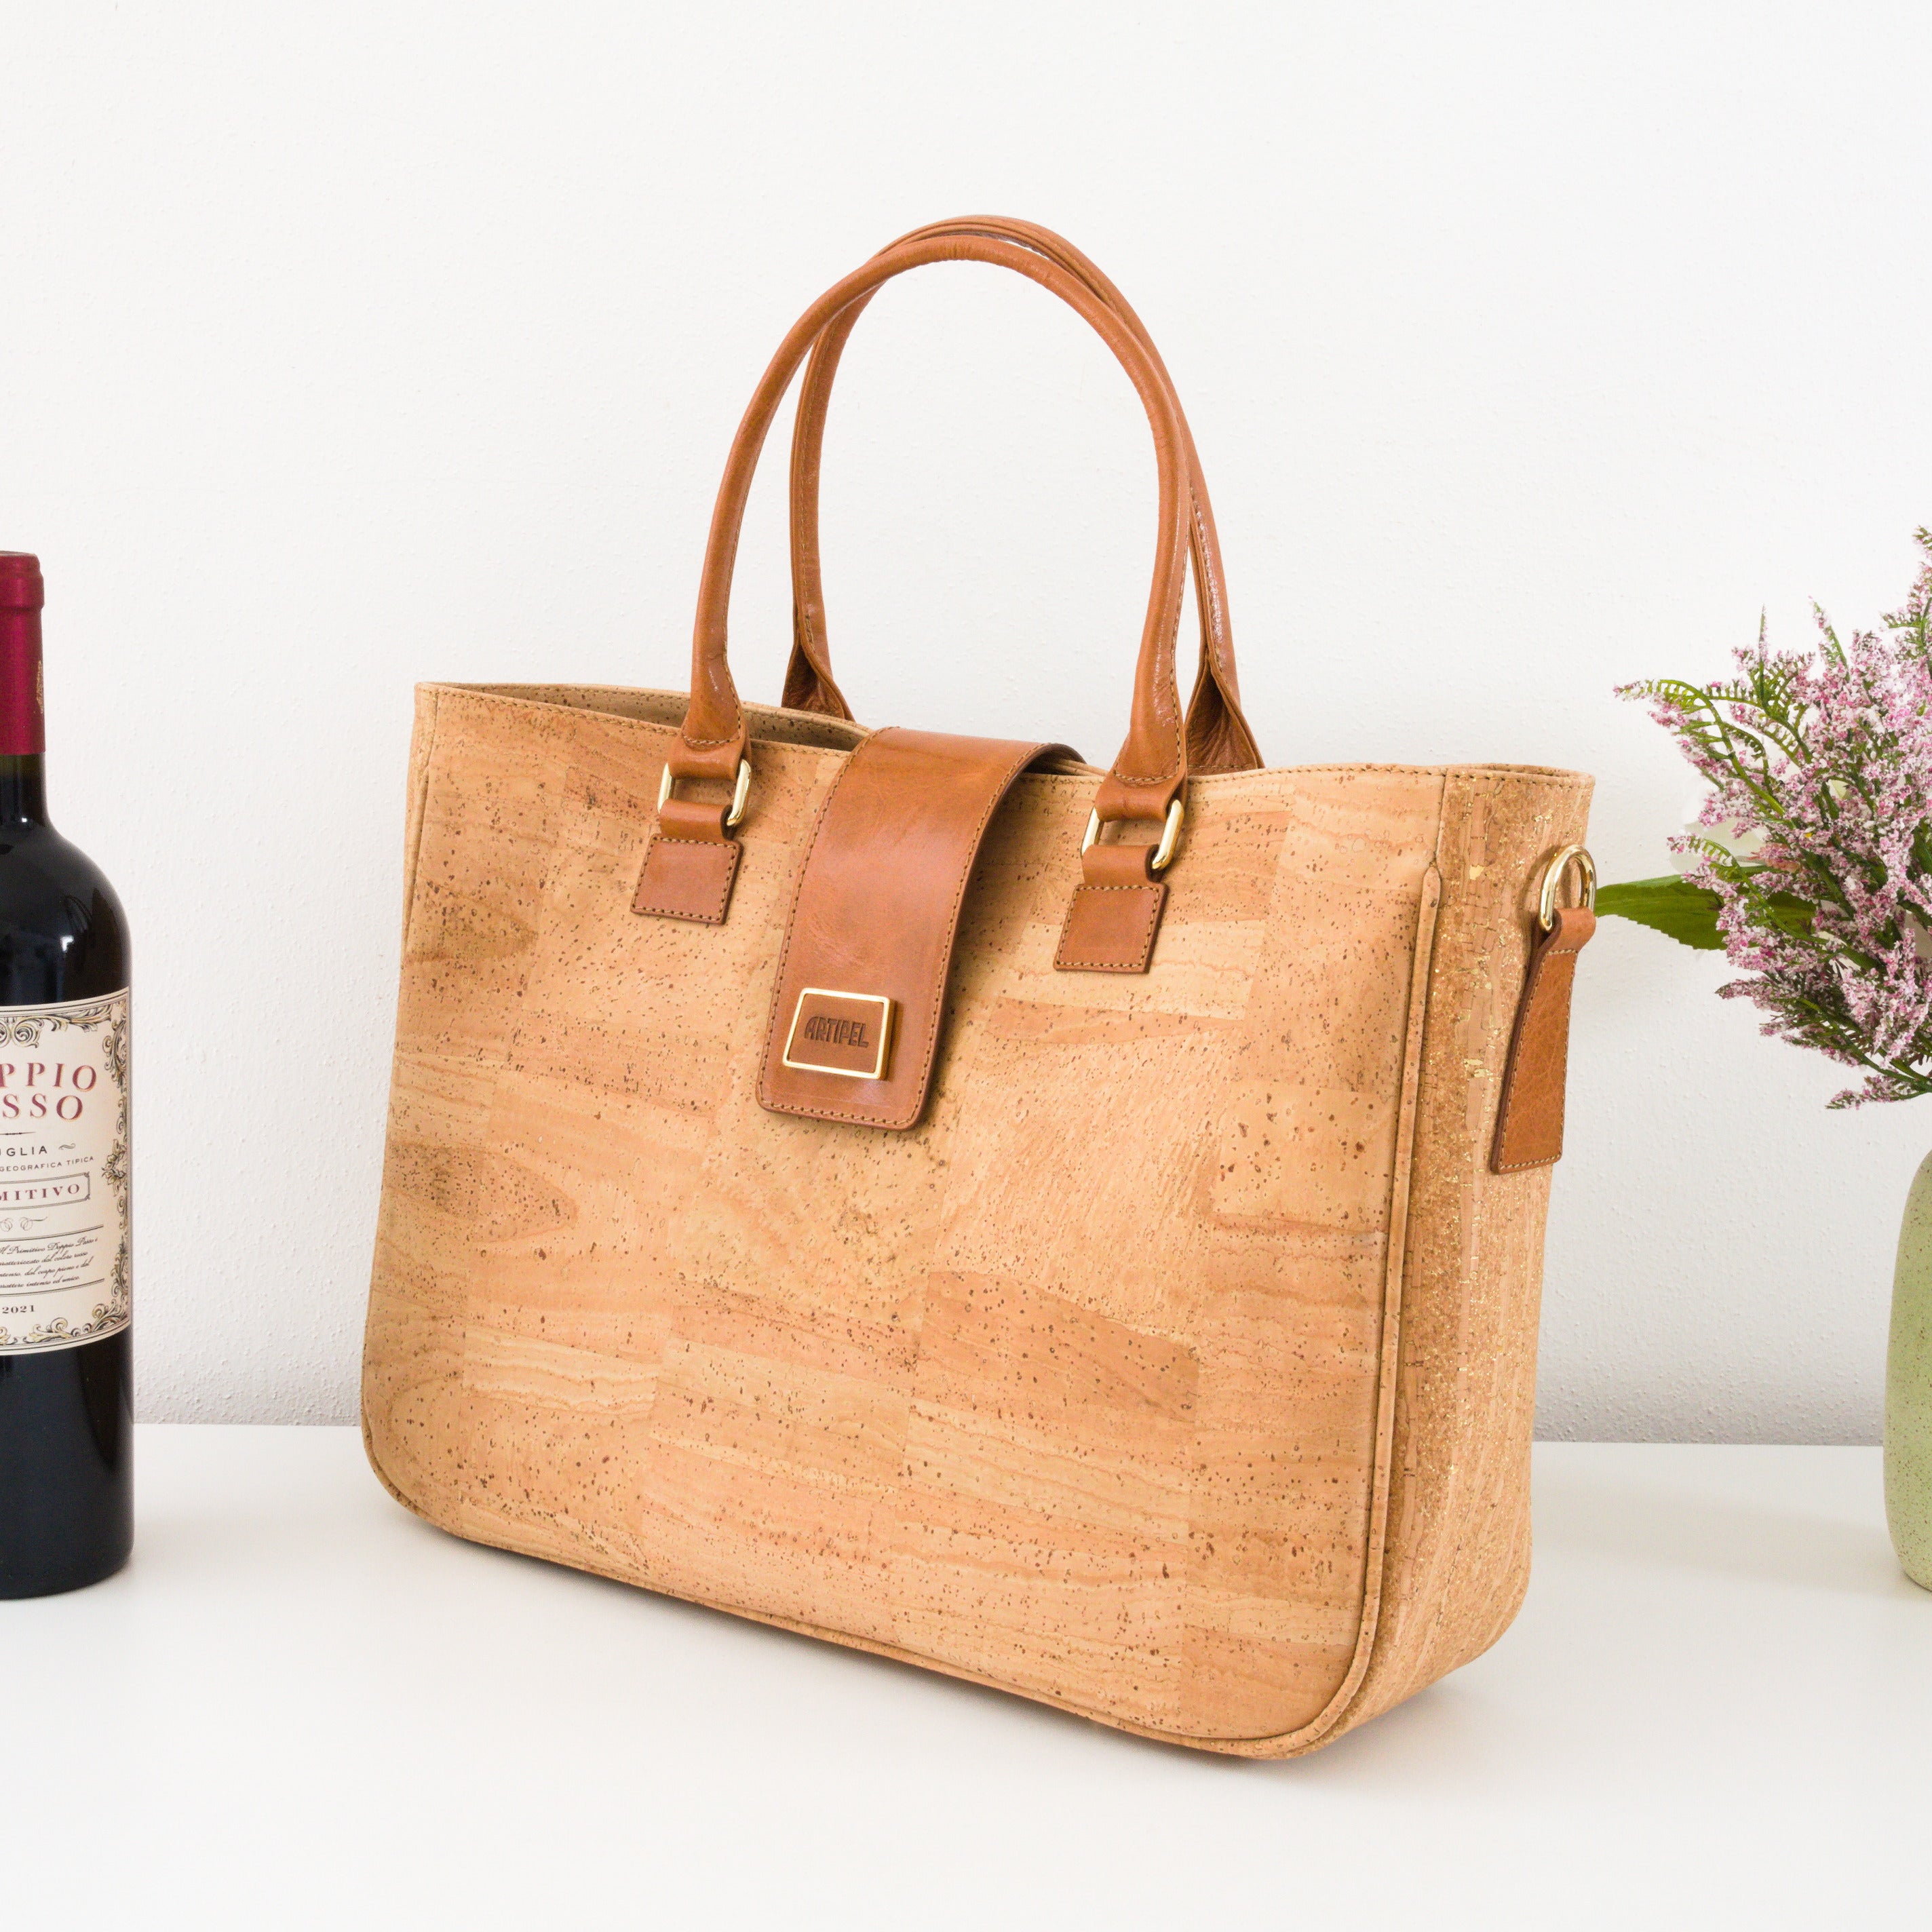 Cork handbag * shoulder bag for women * crossbody * shopper * handmade in Portugal